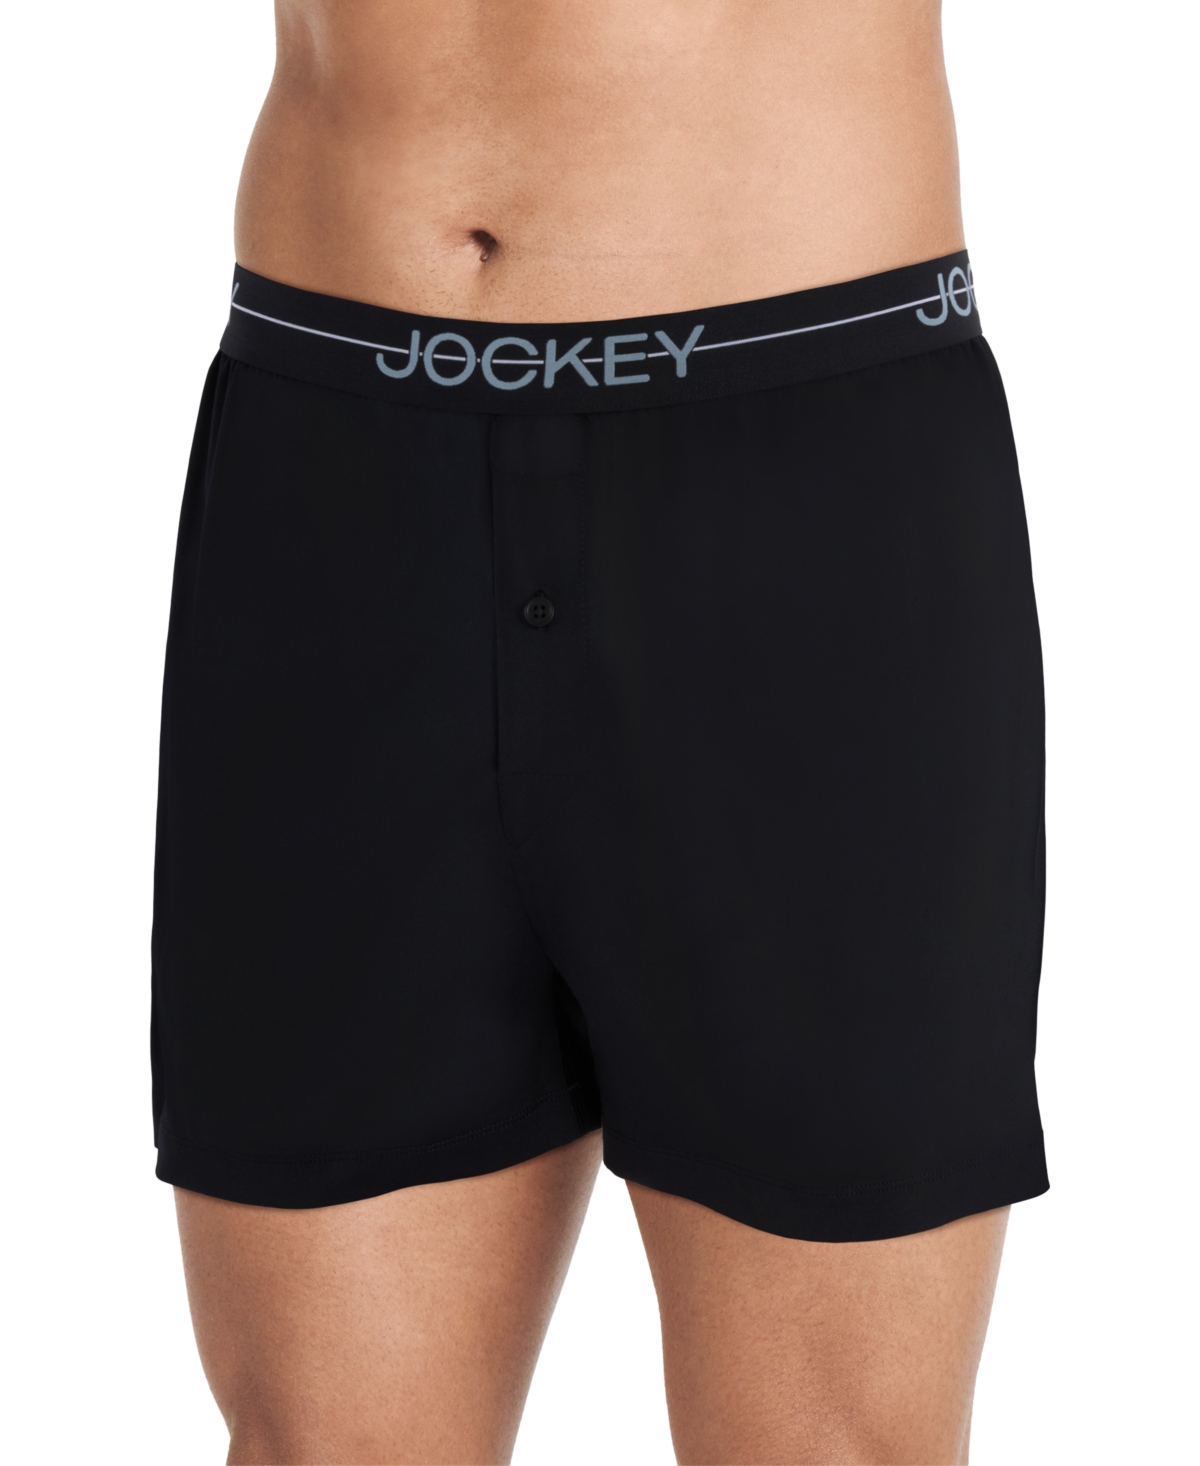 Jockey Men's Underwear Elance Poco Brief - 2 Pack, Turquoise geo